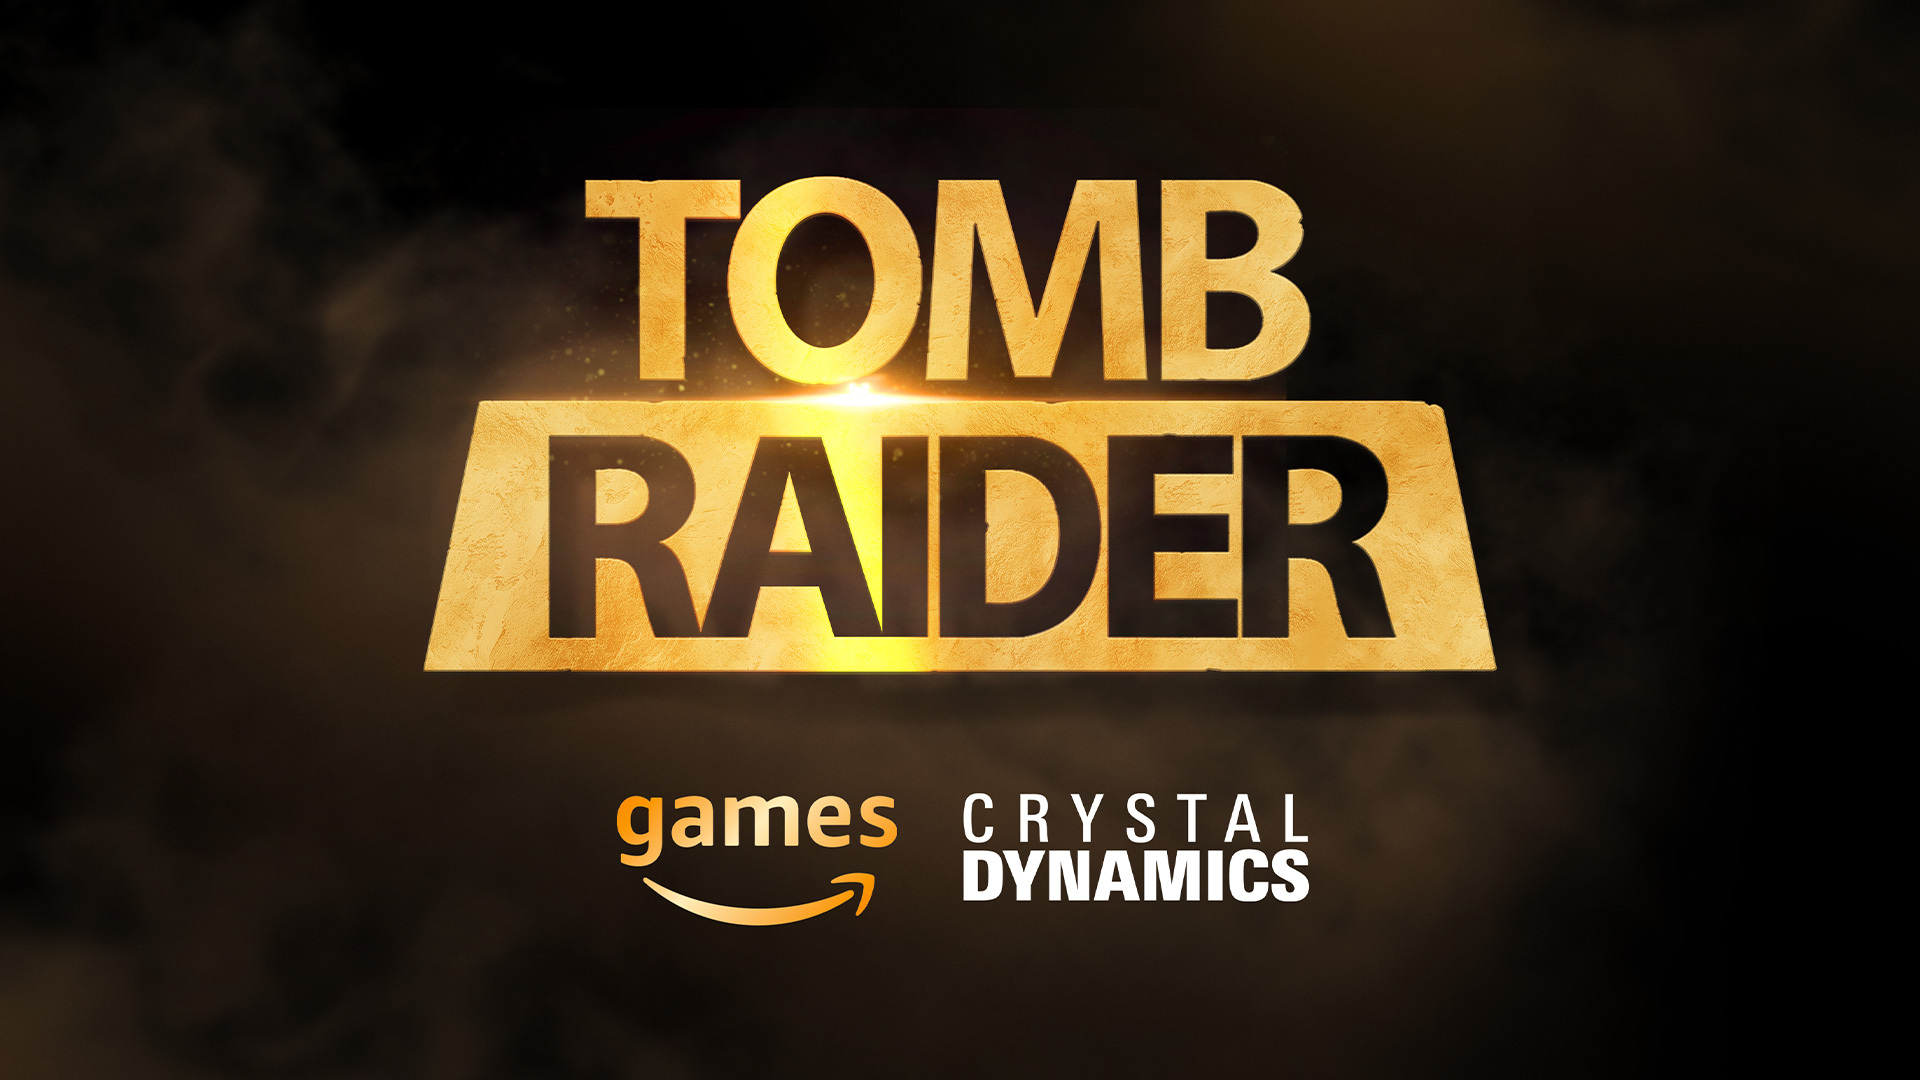 Control e Tomb Raider são os jogos do Prime Gaming de novembro de 2021